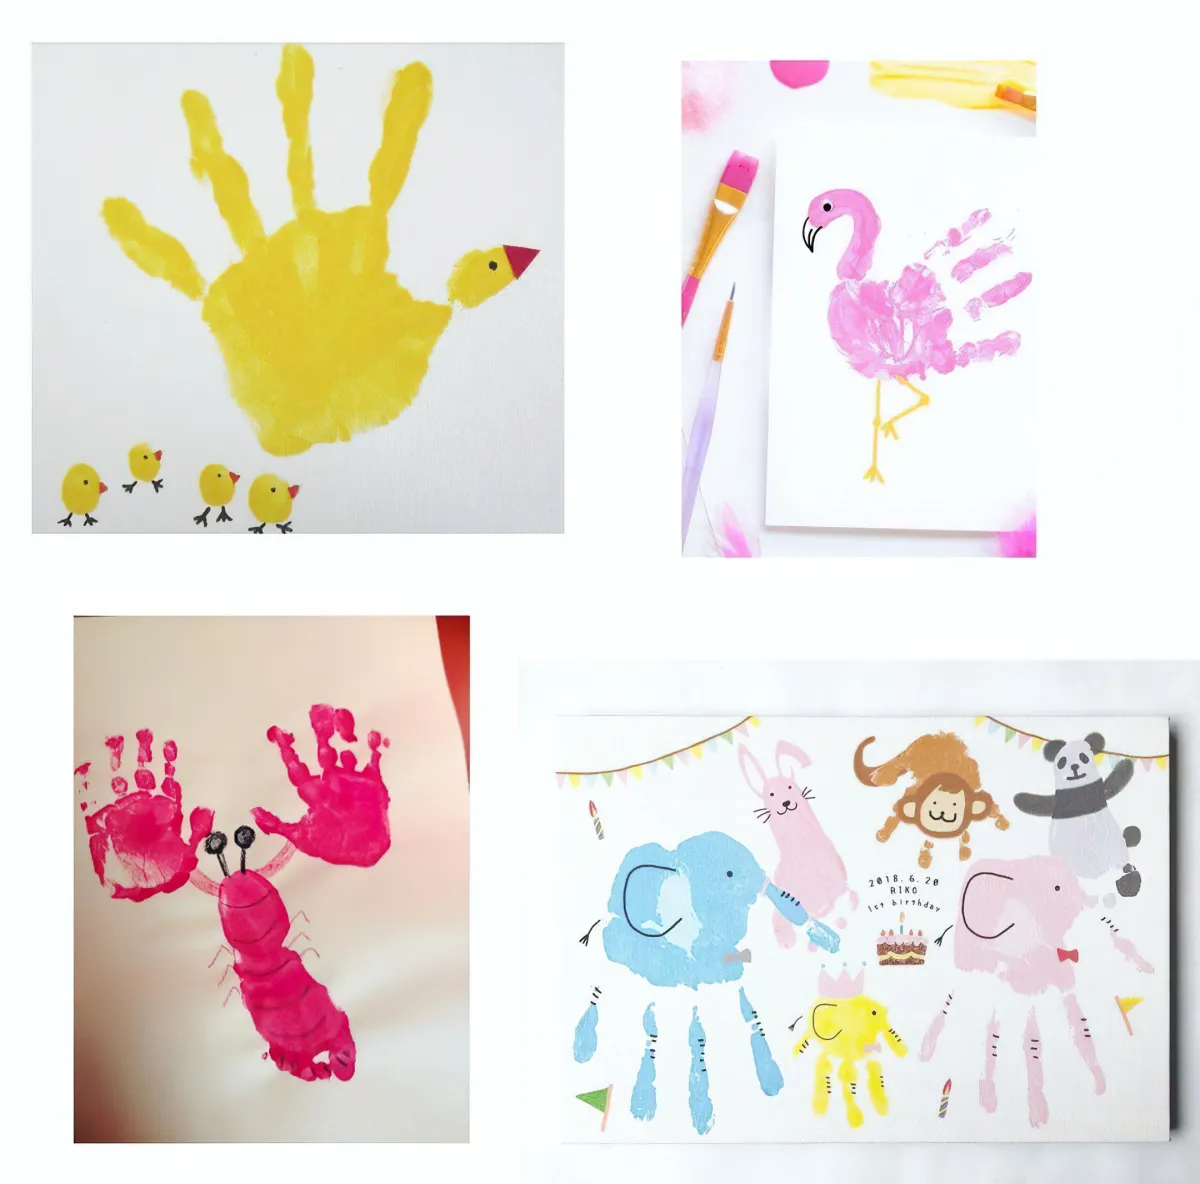 bilder gestalten mit handabdrücken ideen kindergarten tiere zeichnen